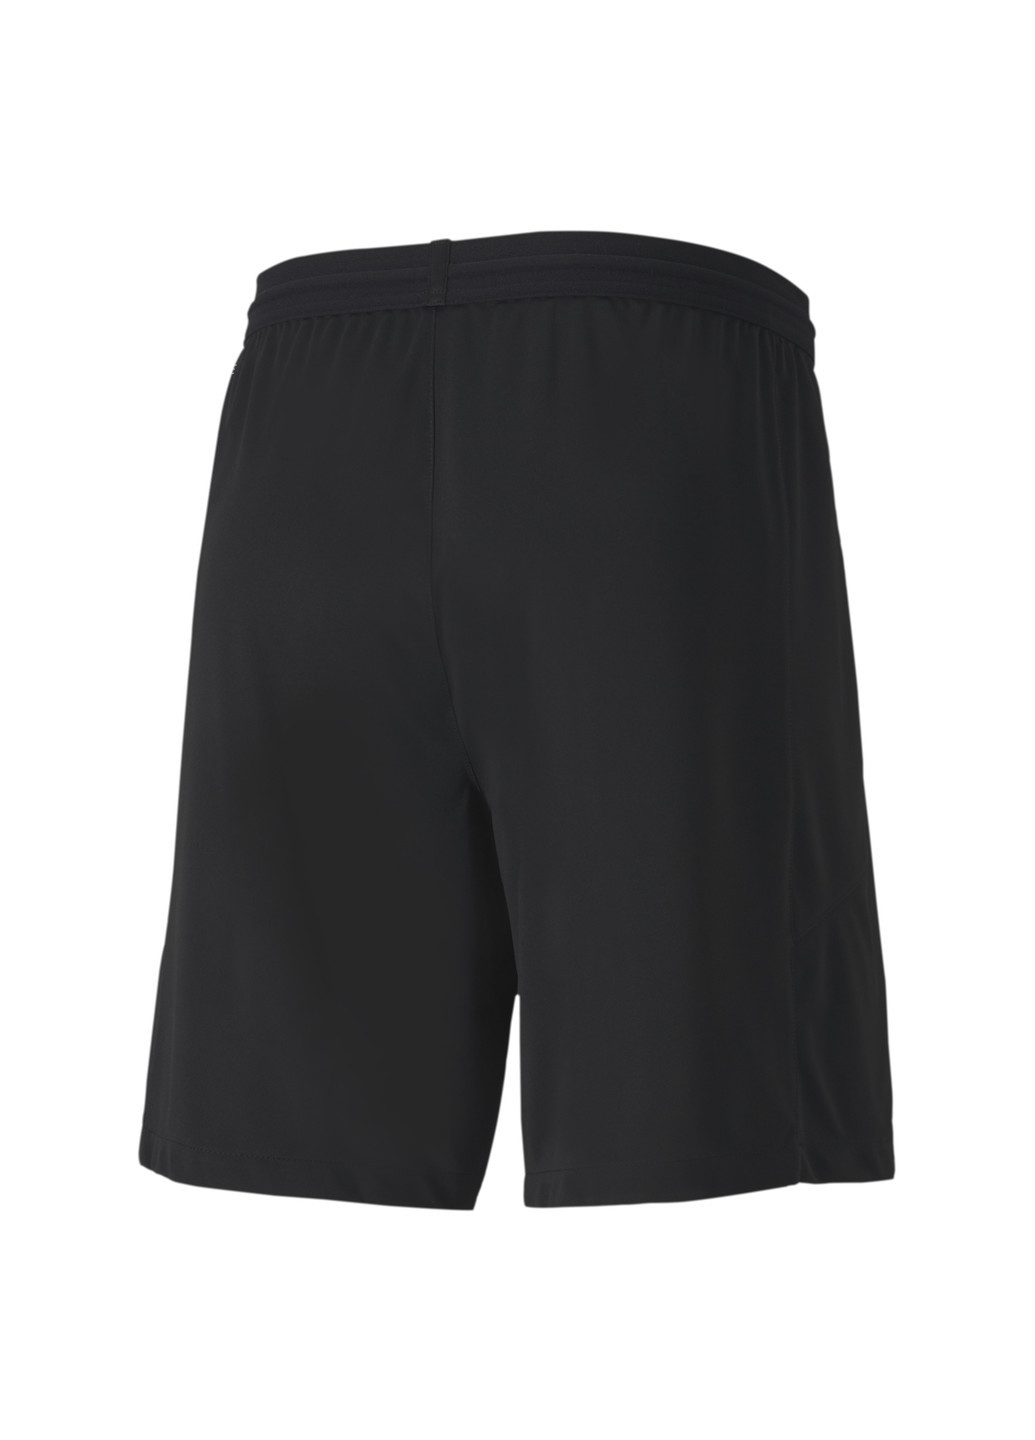 Шорты teamFINAL Knit Men’s Shorts Puma однотонные чёрные спортивные полиэстер